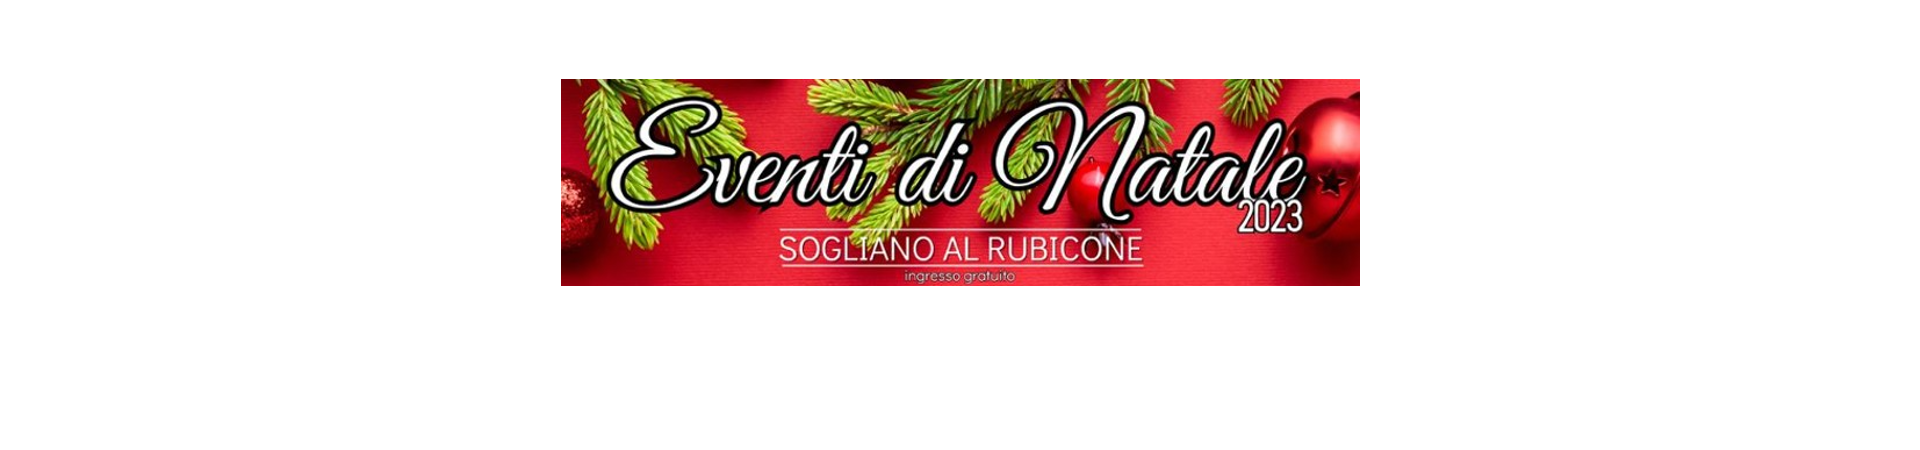 Visit-Sogliano-al-Rubicone-Eventi-natale2023_banner1920